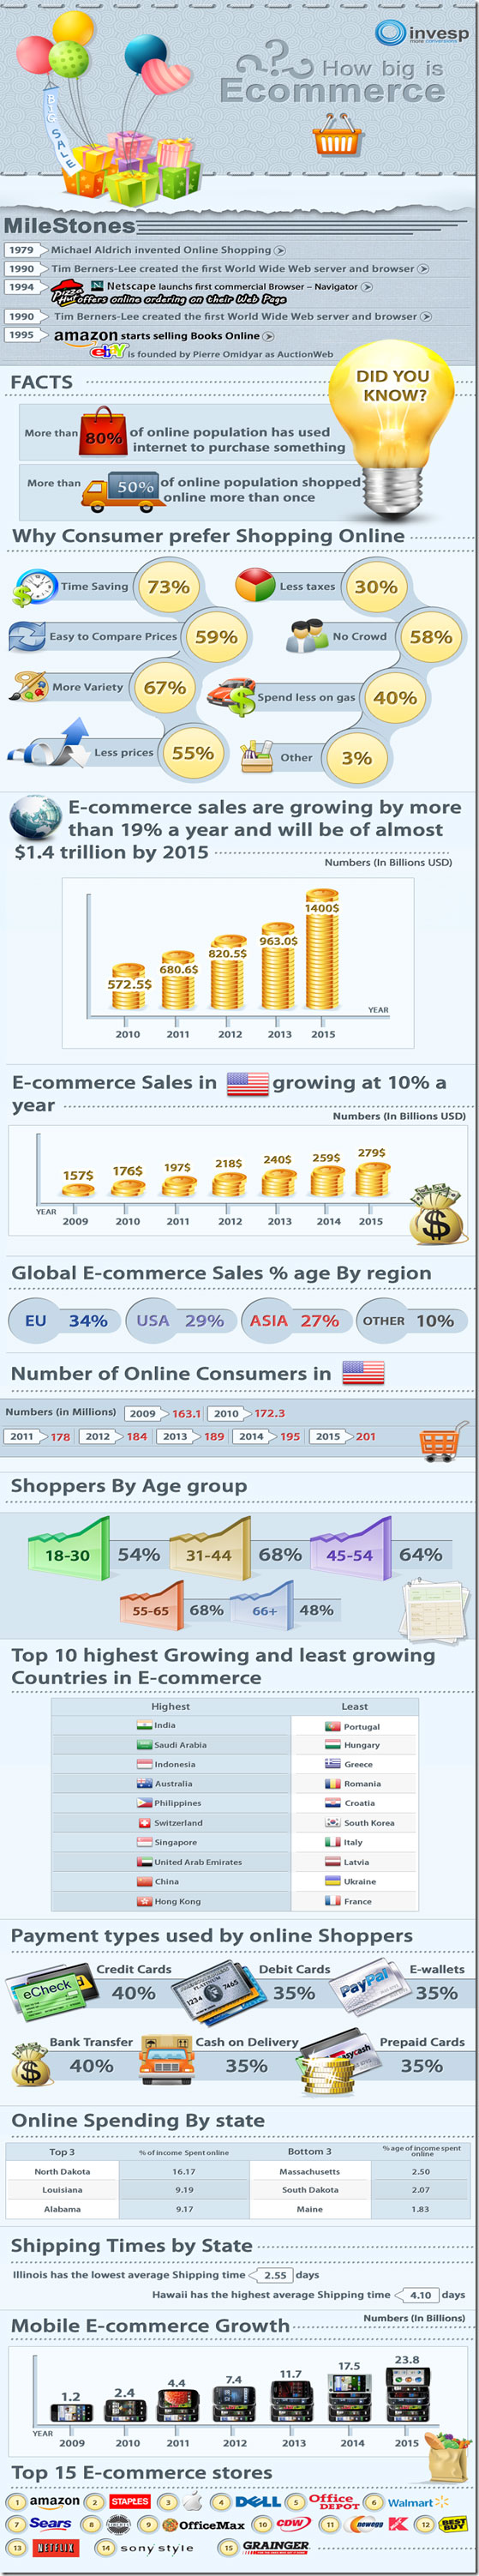 infografía comercio electrónico ecommerce